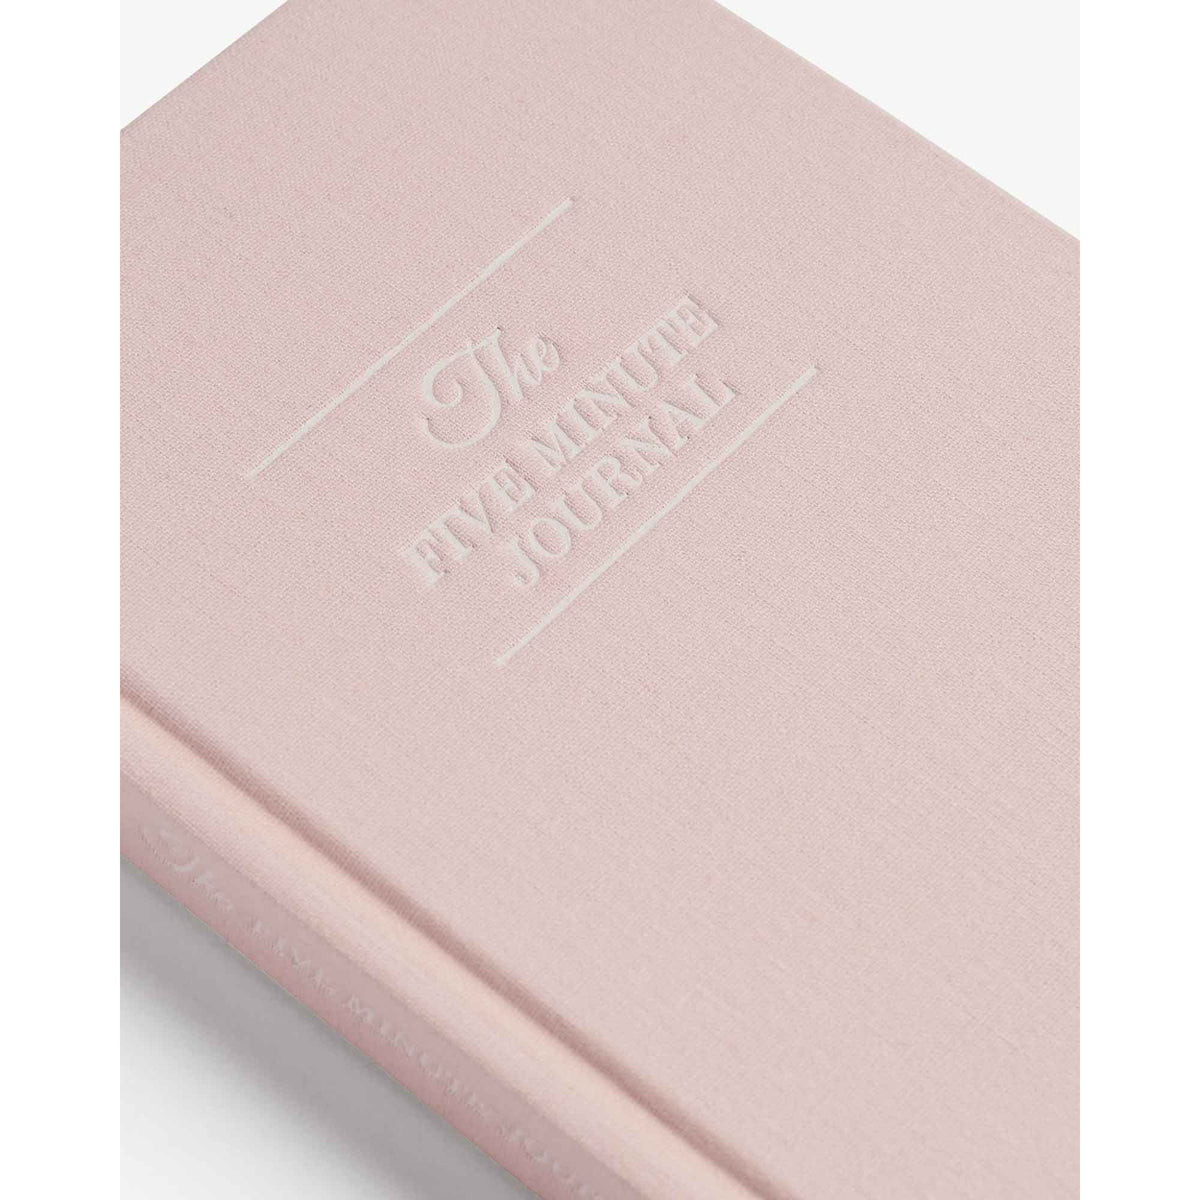 Grateful Workflow Monthly Bundle - Blush Pink by Intelligent Change